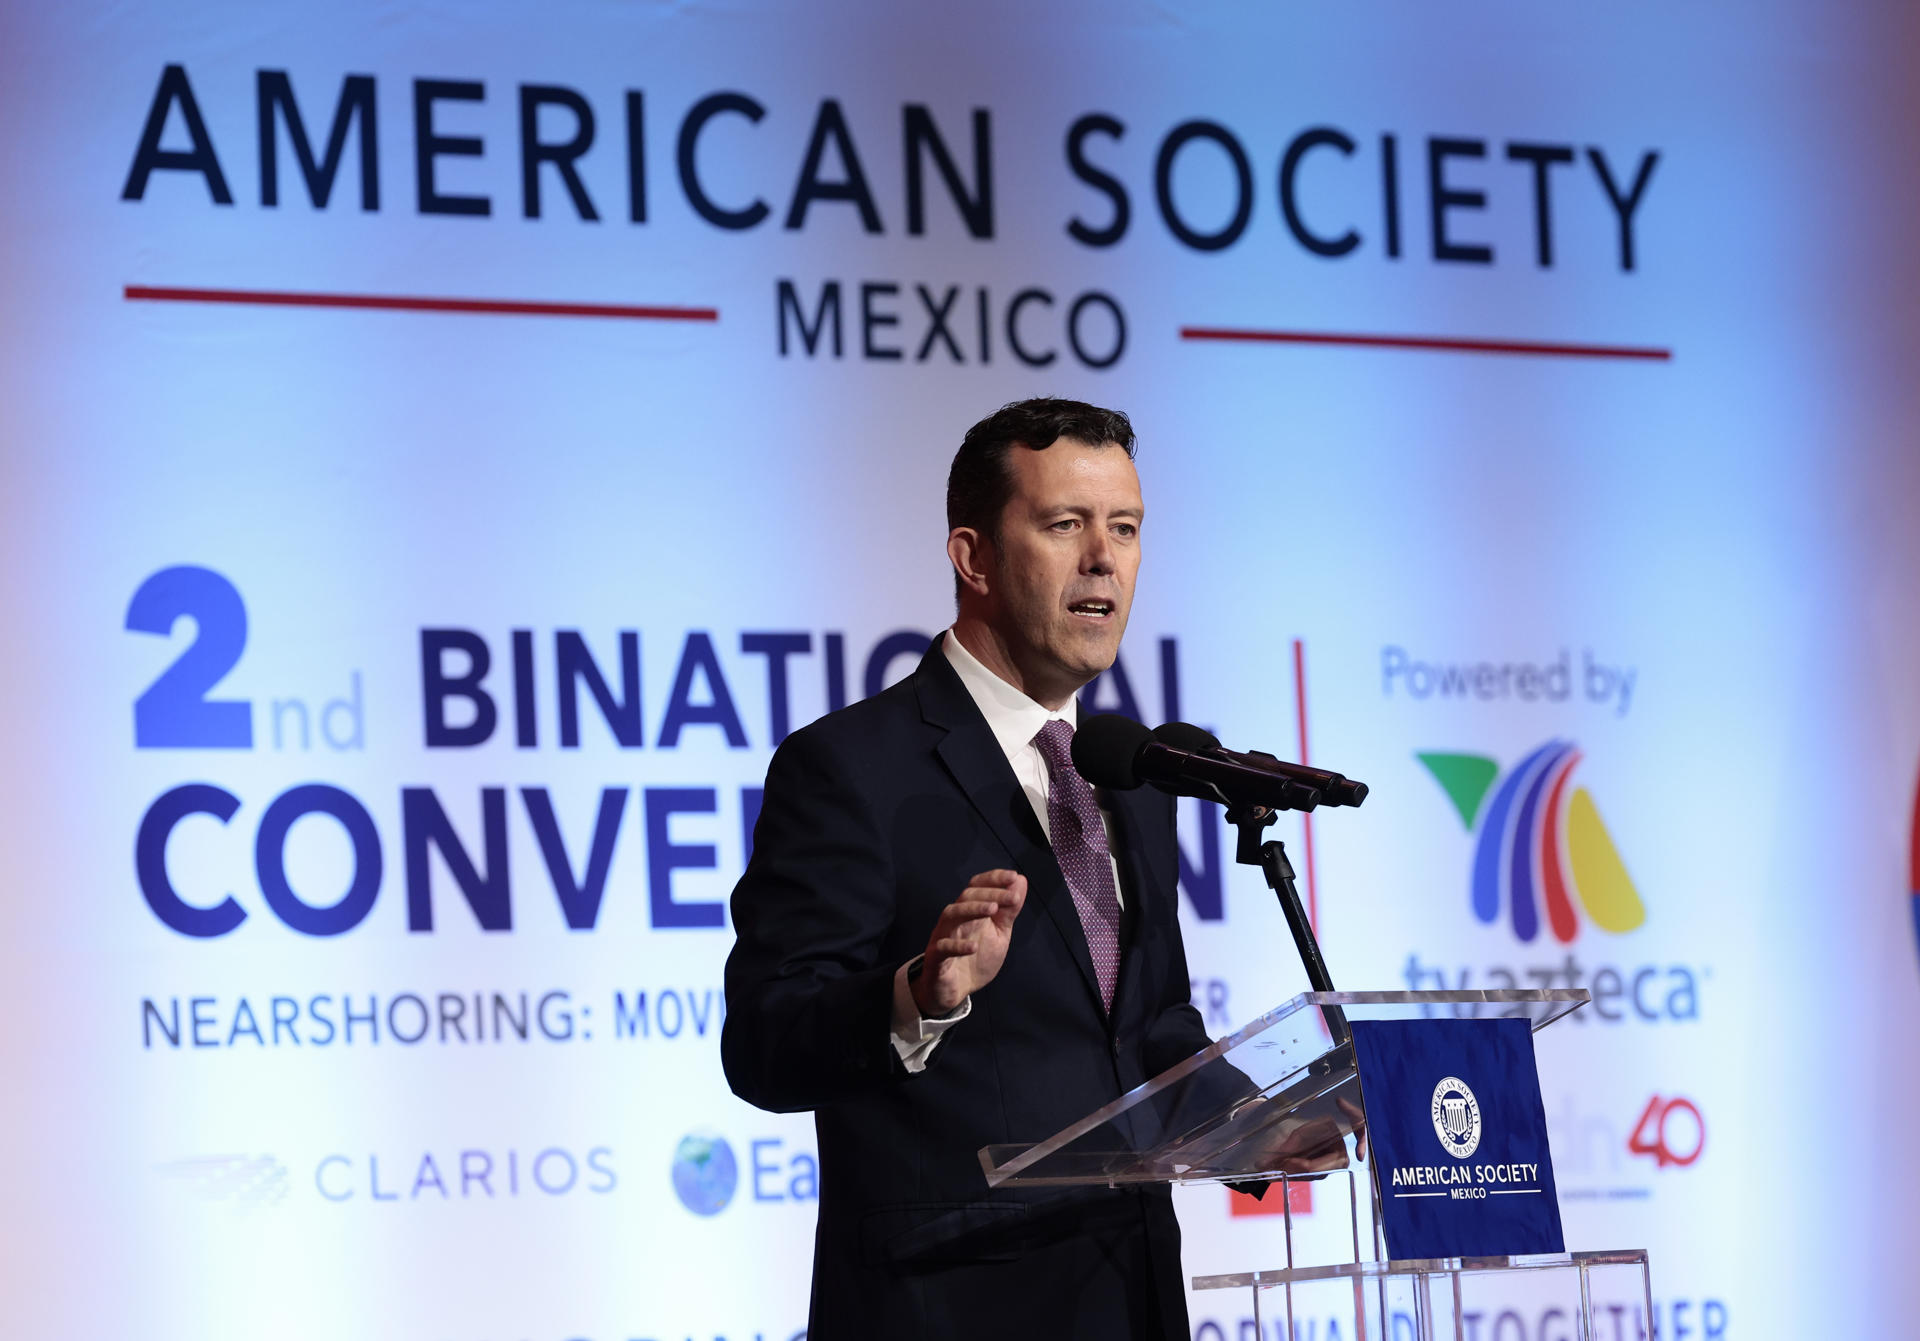 El presidente de la American Society of Mexico (AmSoc), Larry Rubin, habla hoy durante la Convención Binacional de American Society of Mexico, en Ciudad de México (México). EFE/José Méndez